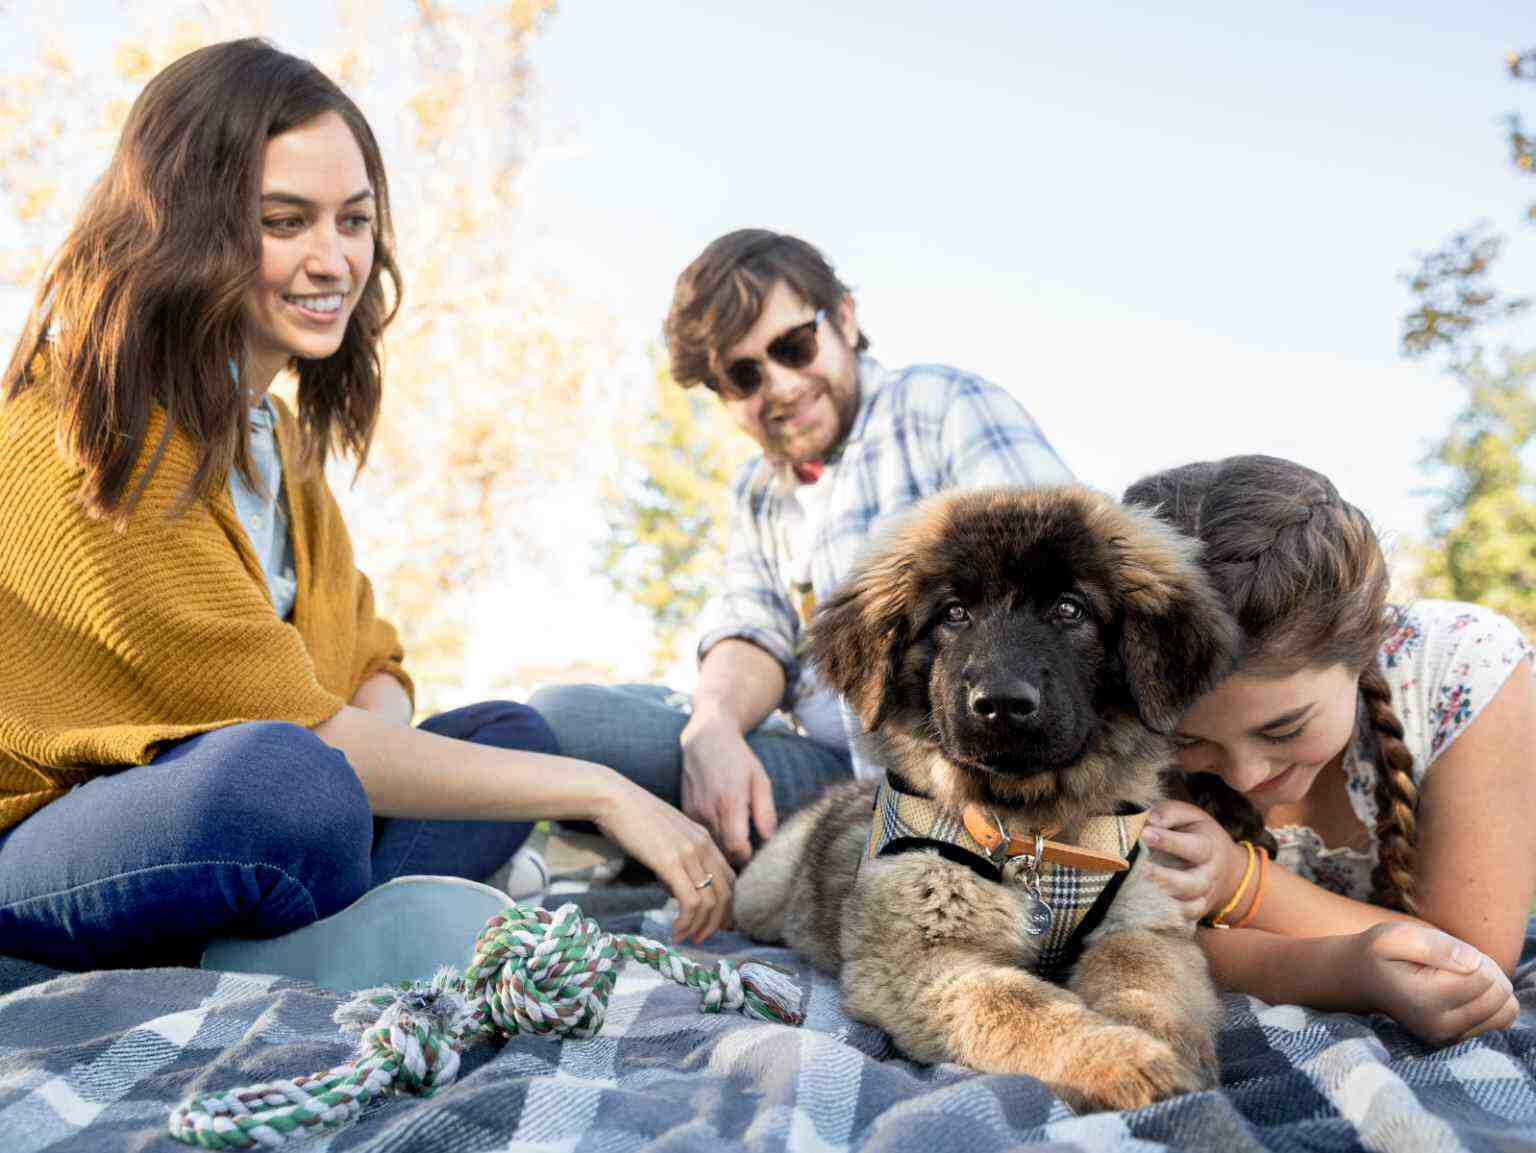 familia que juega con su cachorro sobre una manta de picnic